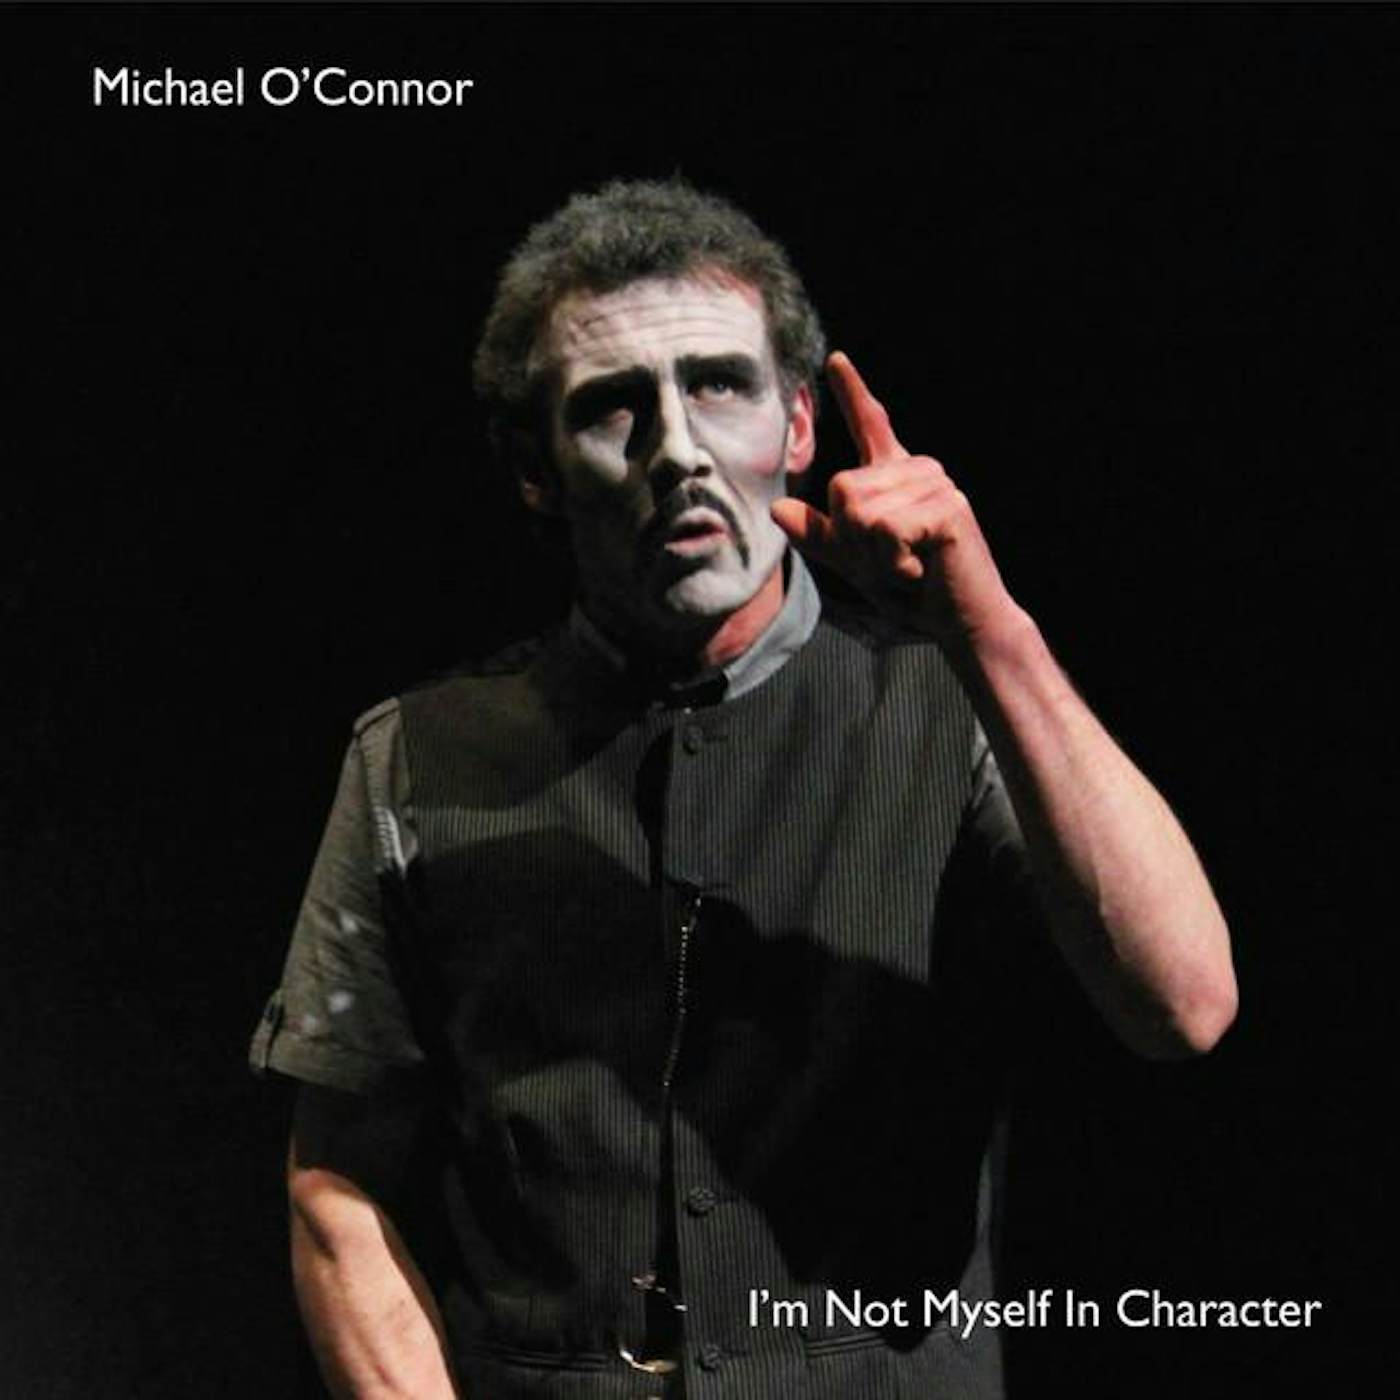 Michael O'Connor